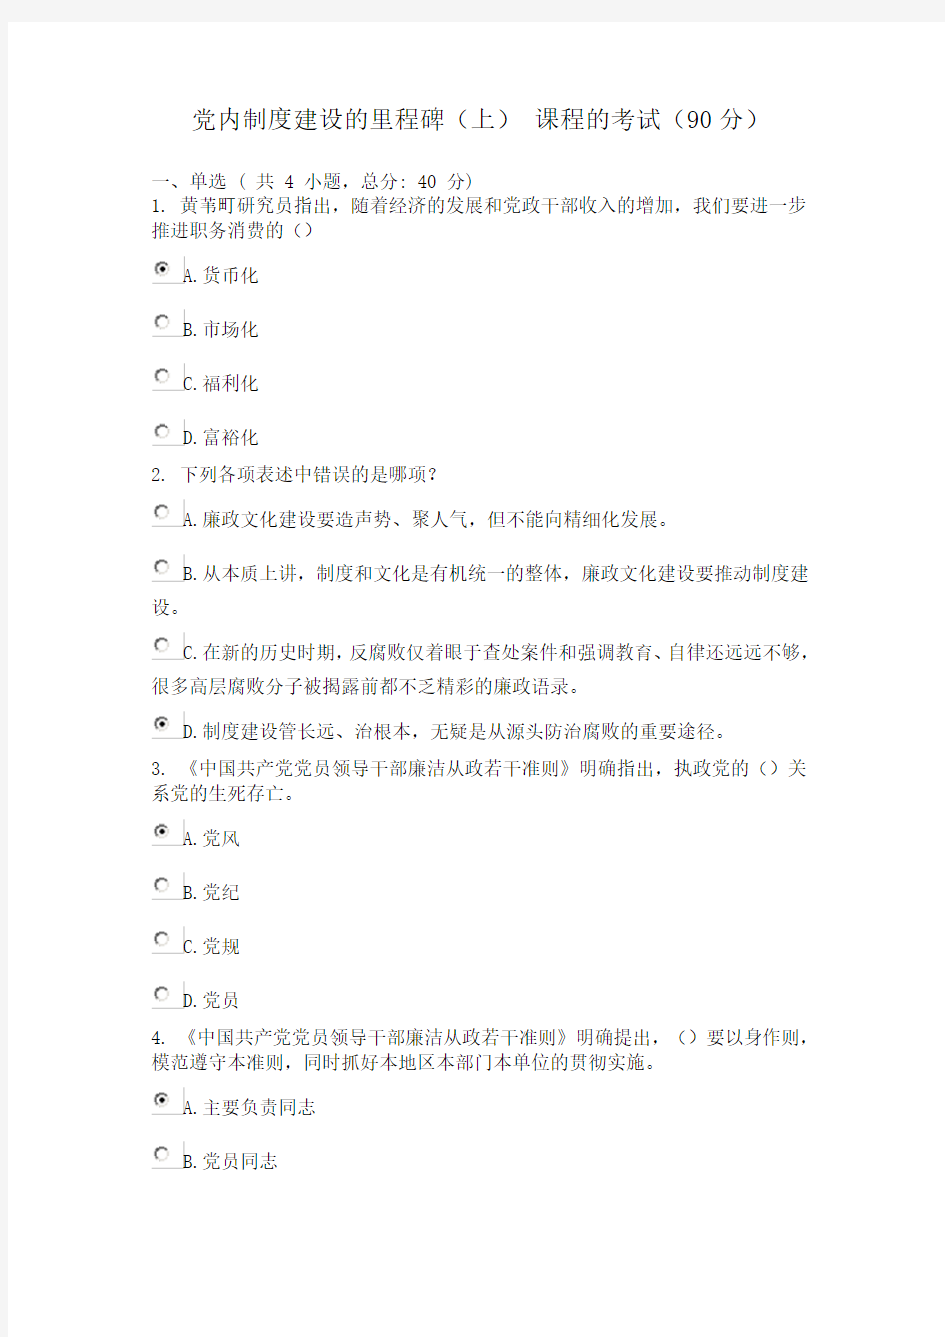 广东省干部培训网络学院 2类 党内制度建设的里程碑  考试 答案 (上) 课程的考试(90分)